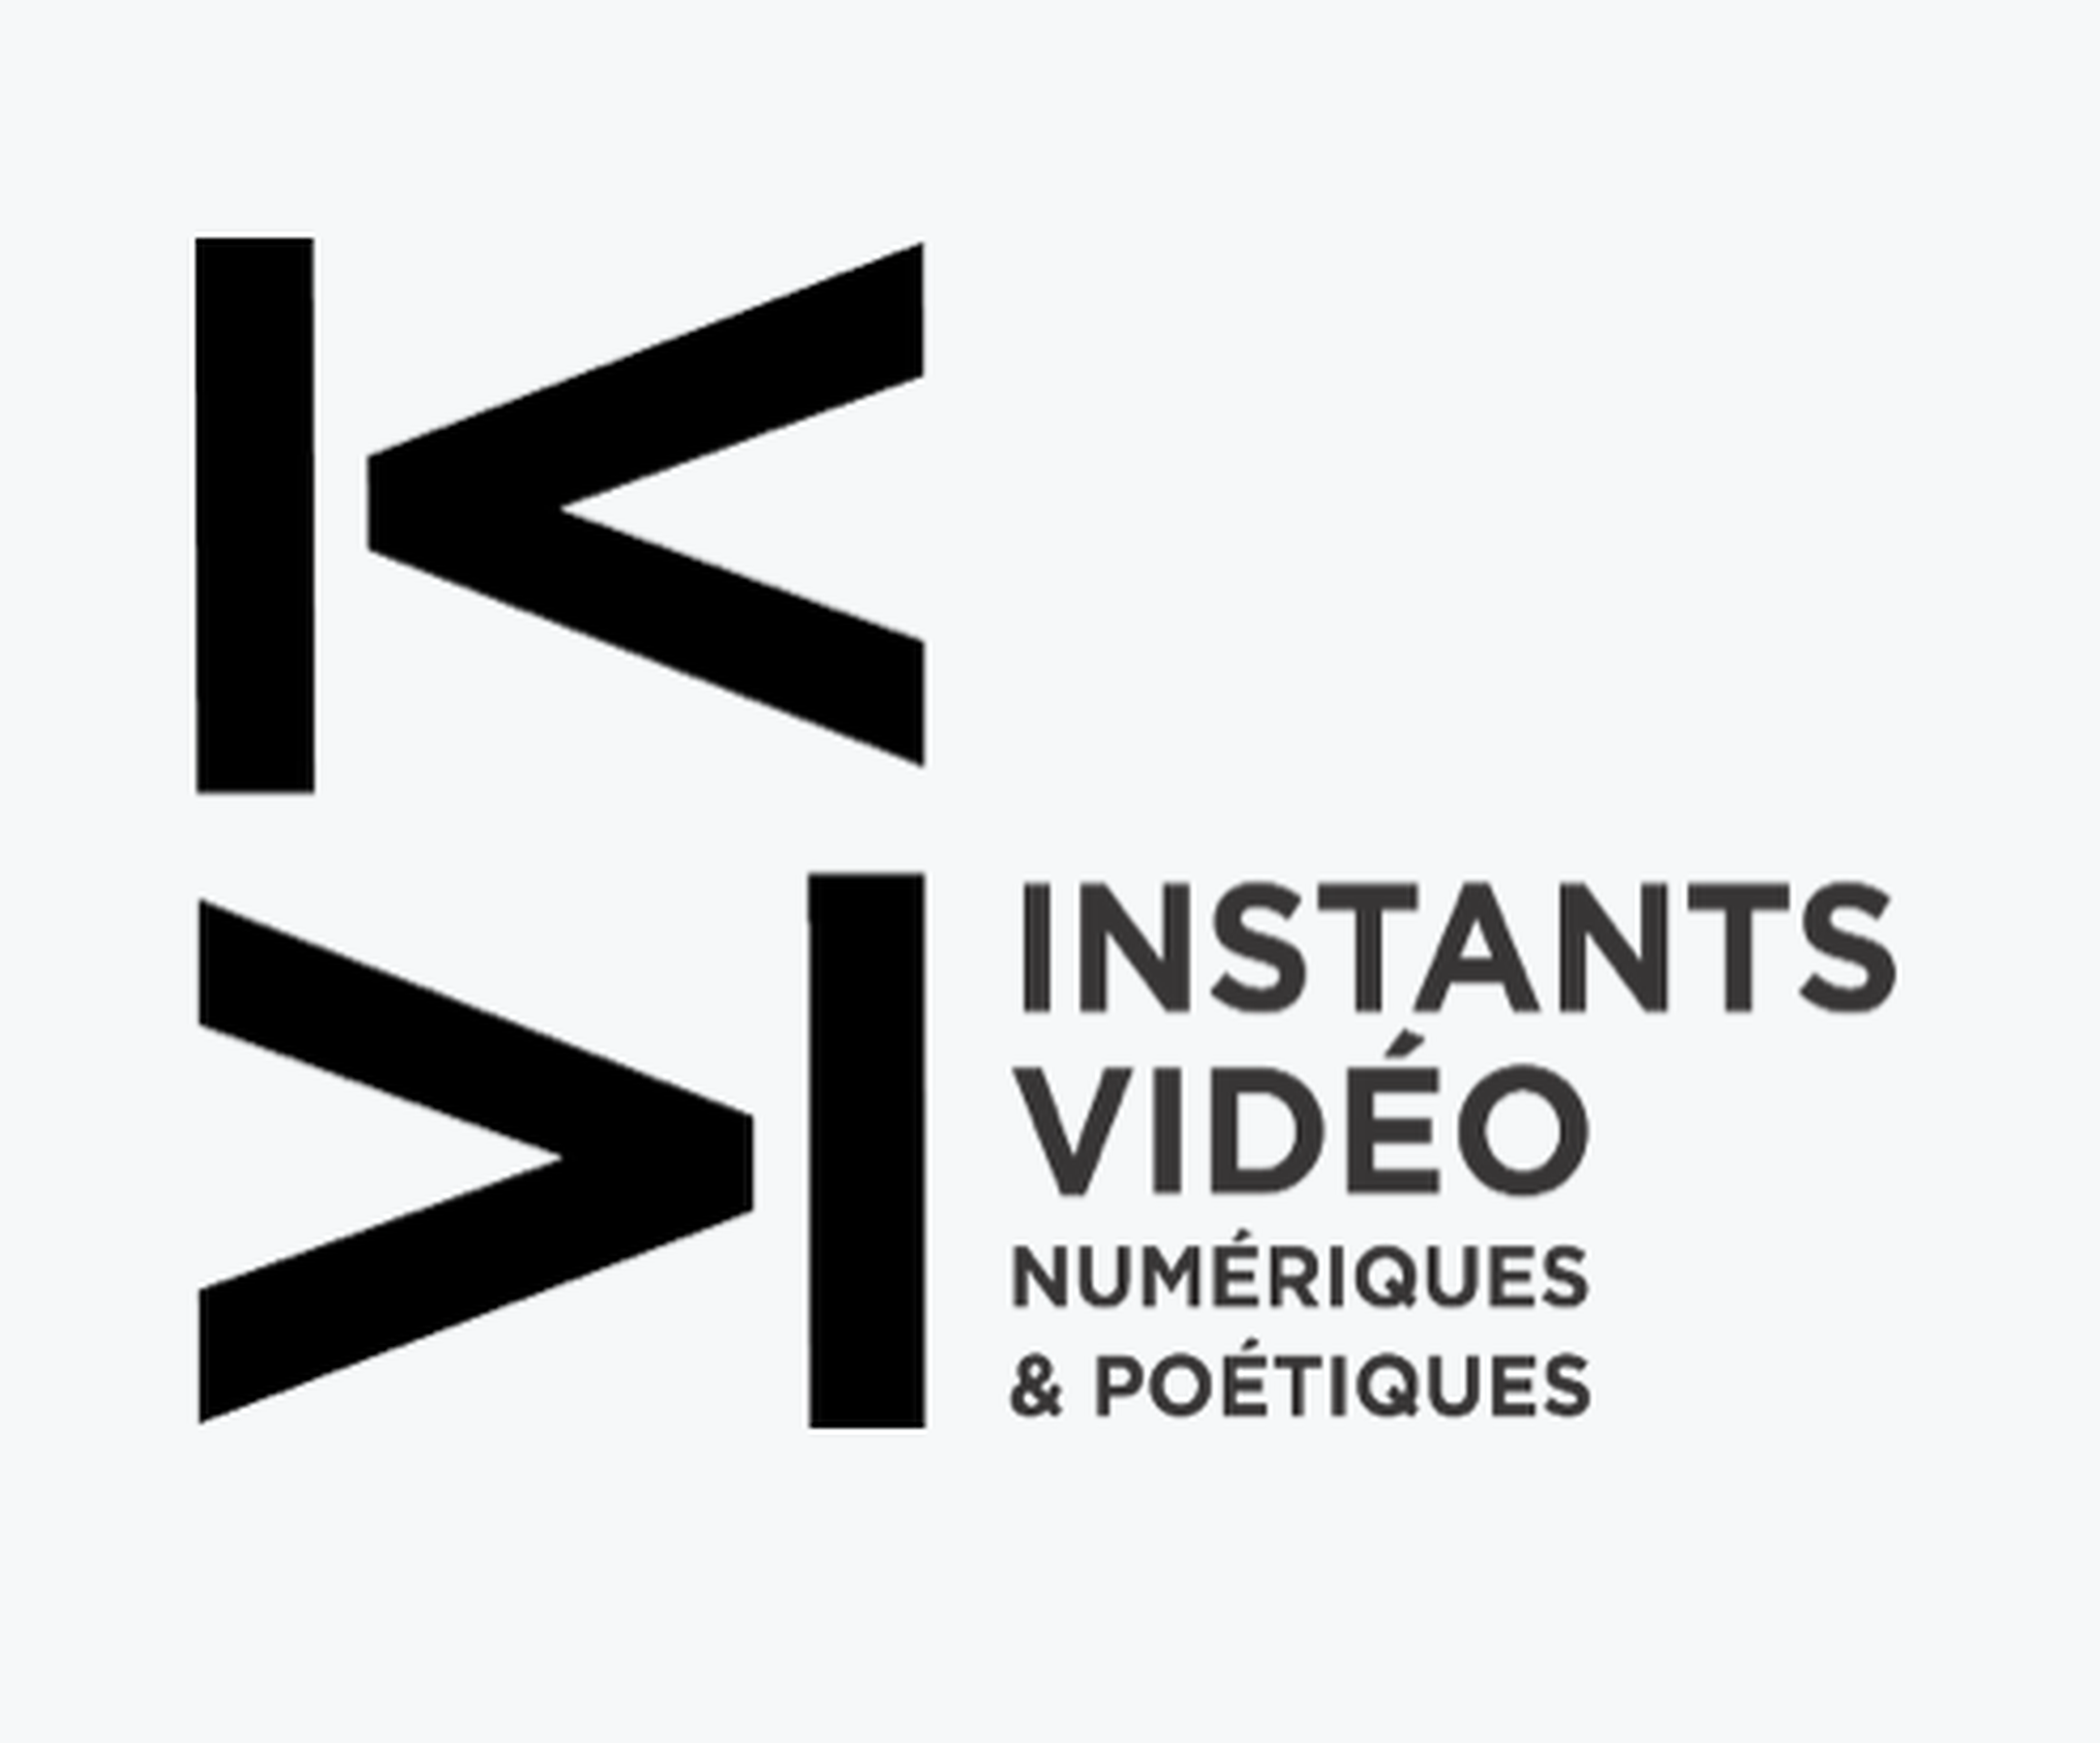 Instants Video